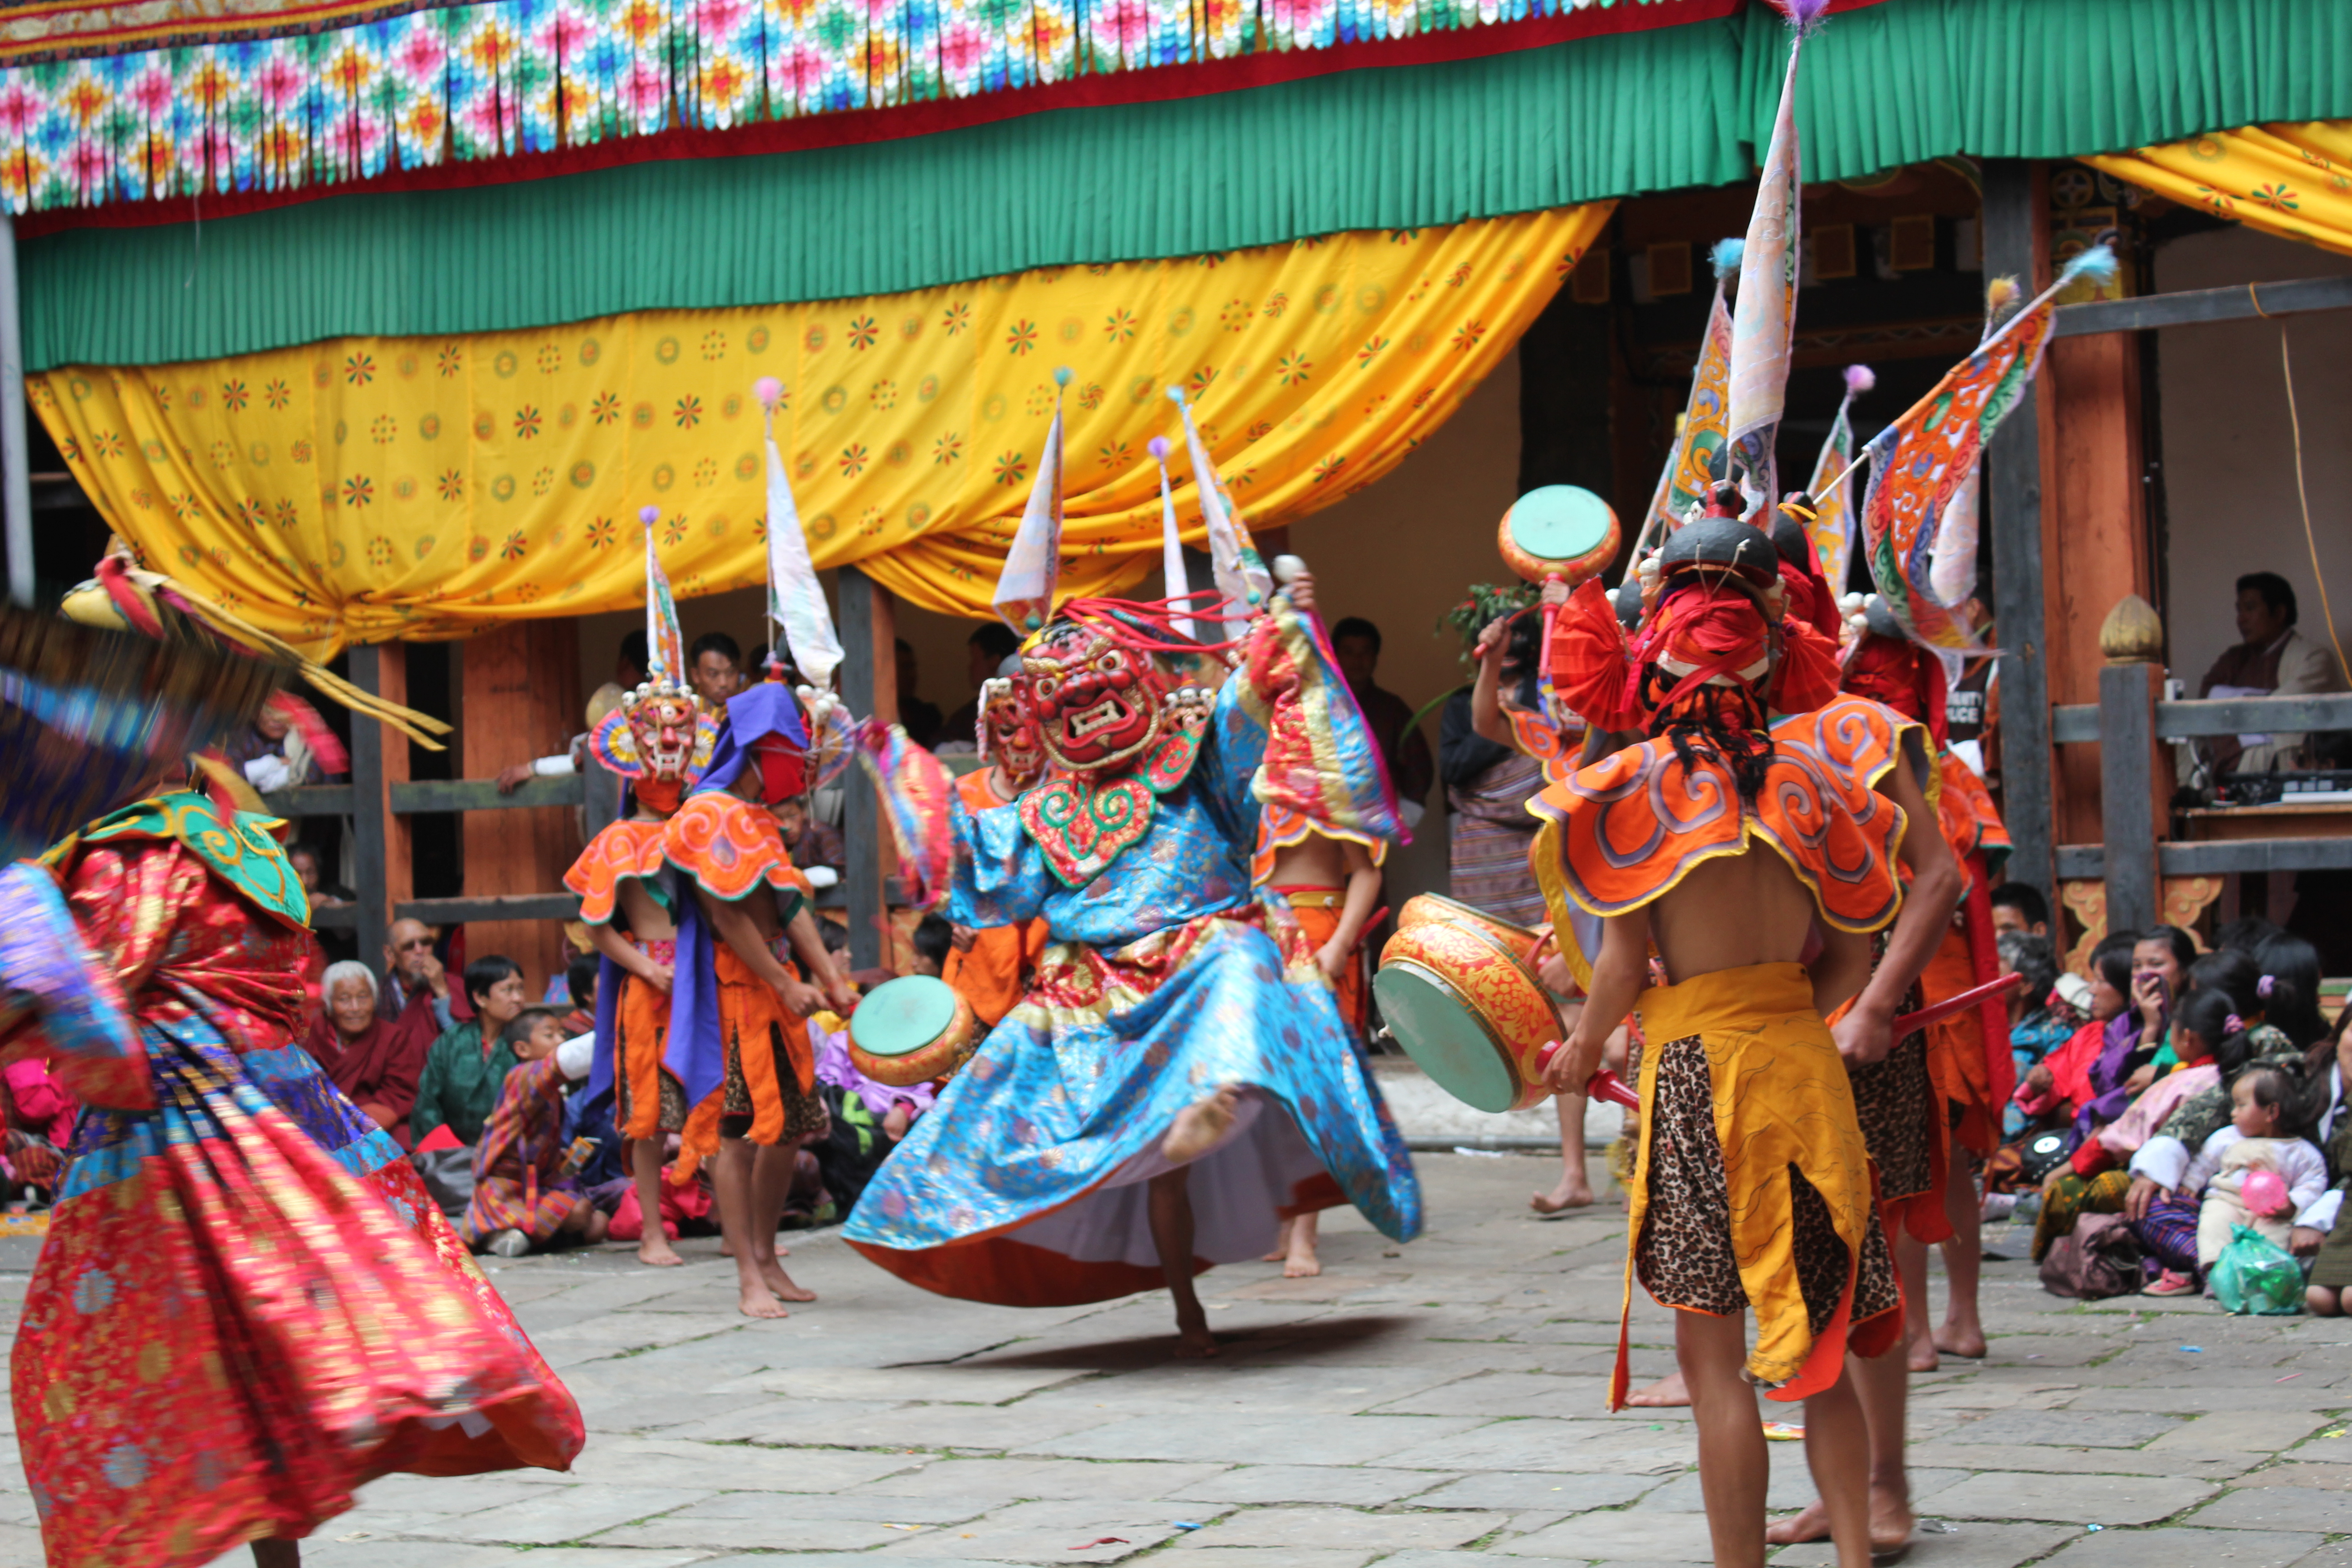 Hình ảnh lễ Jakar Tshechu tại dzong Jakar, huyện Bumthang, Bhutan.